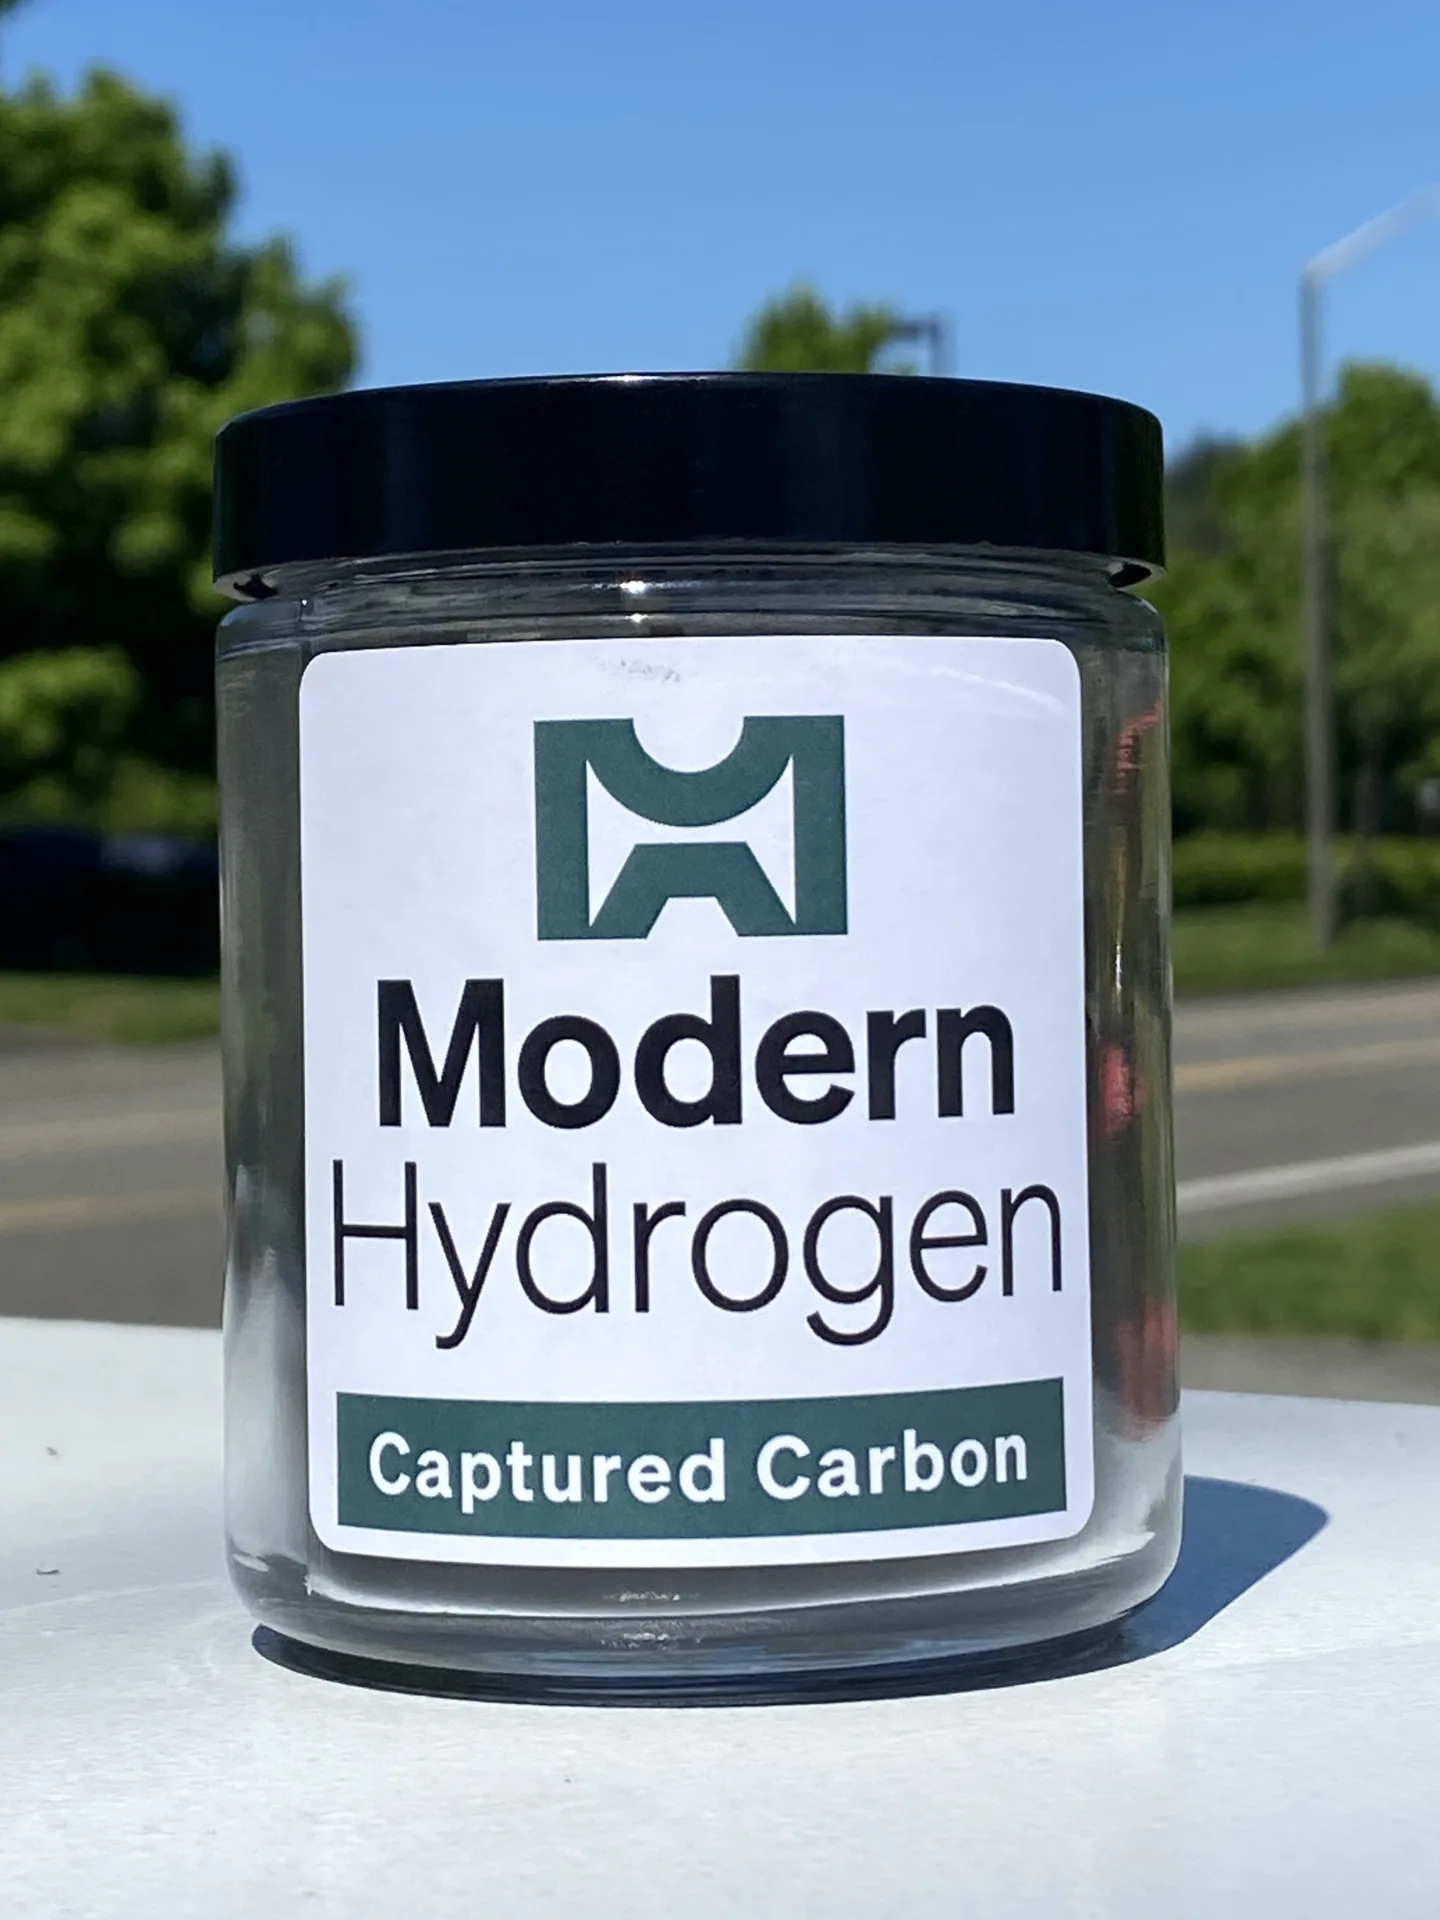 クリーンな水素 - Modern Hydrogen